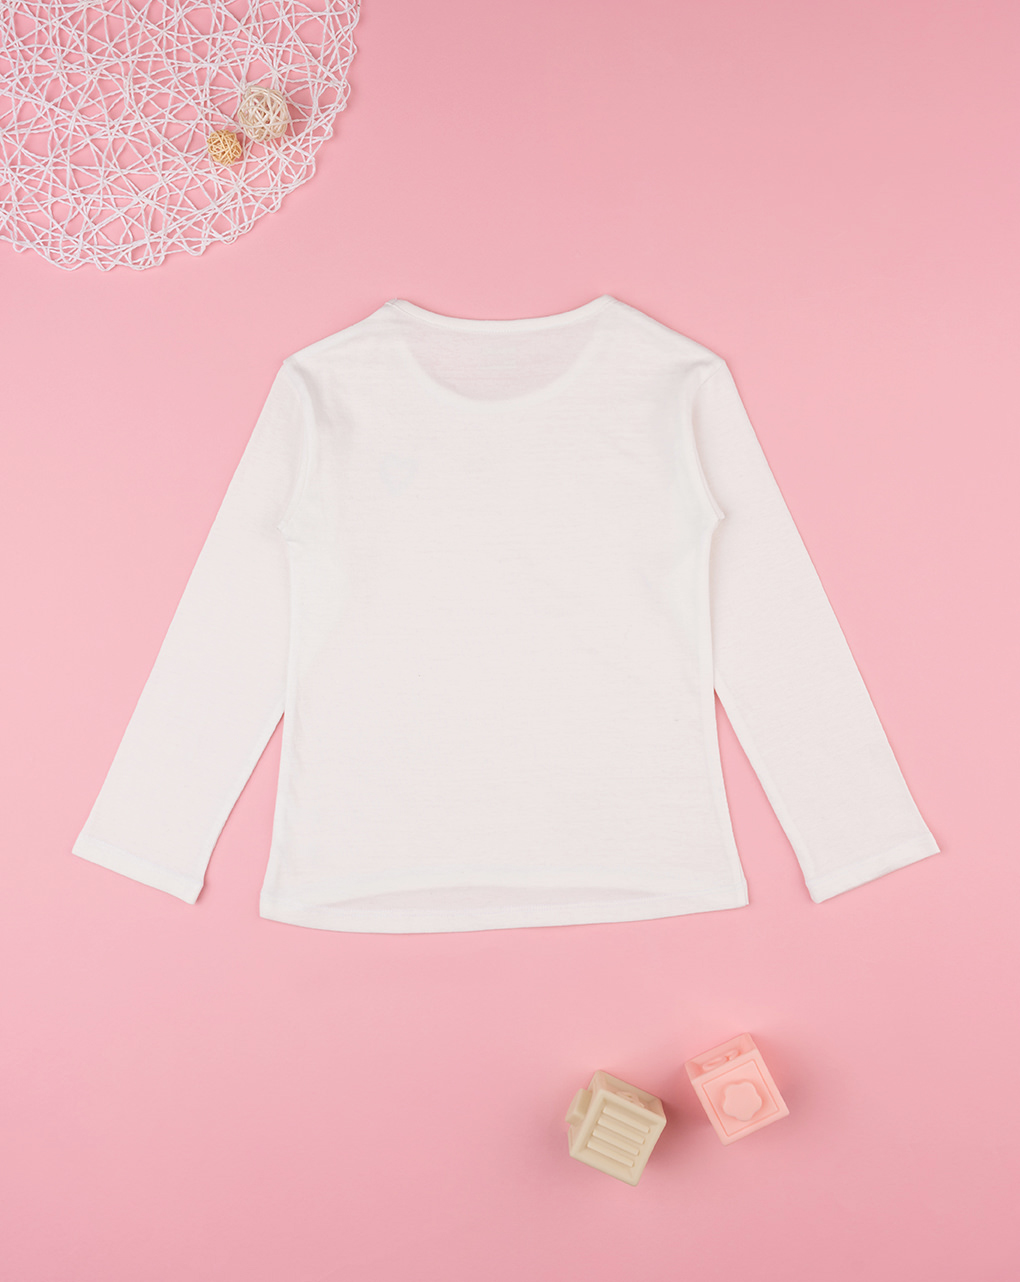 παιδική μπλούζα λευκή με καρδούλα για κορίτσι - Prénatal